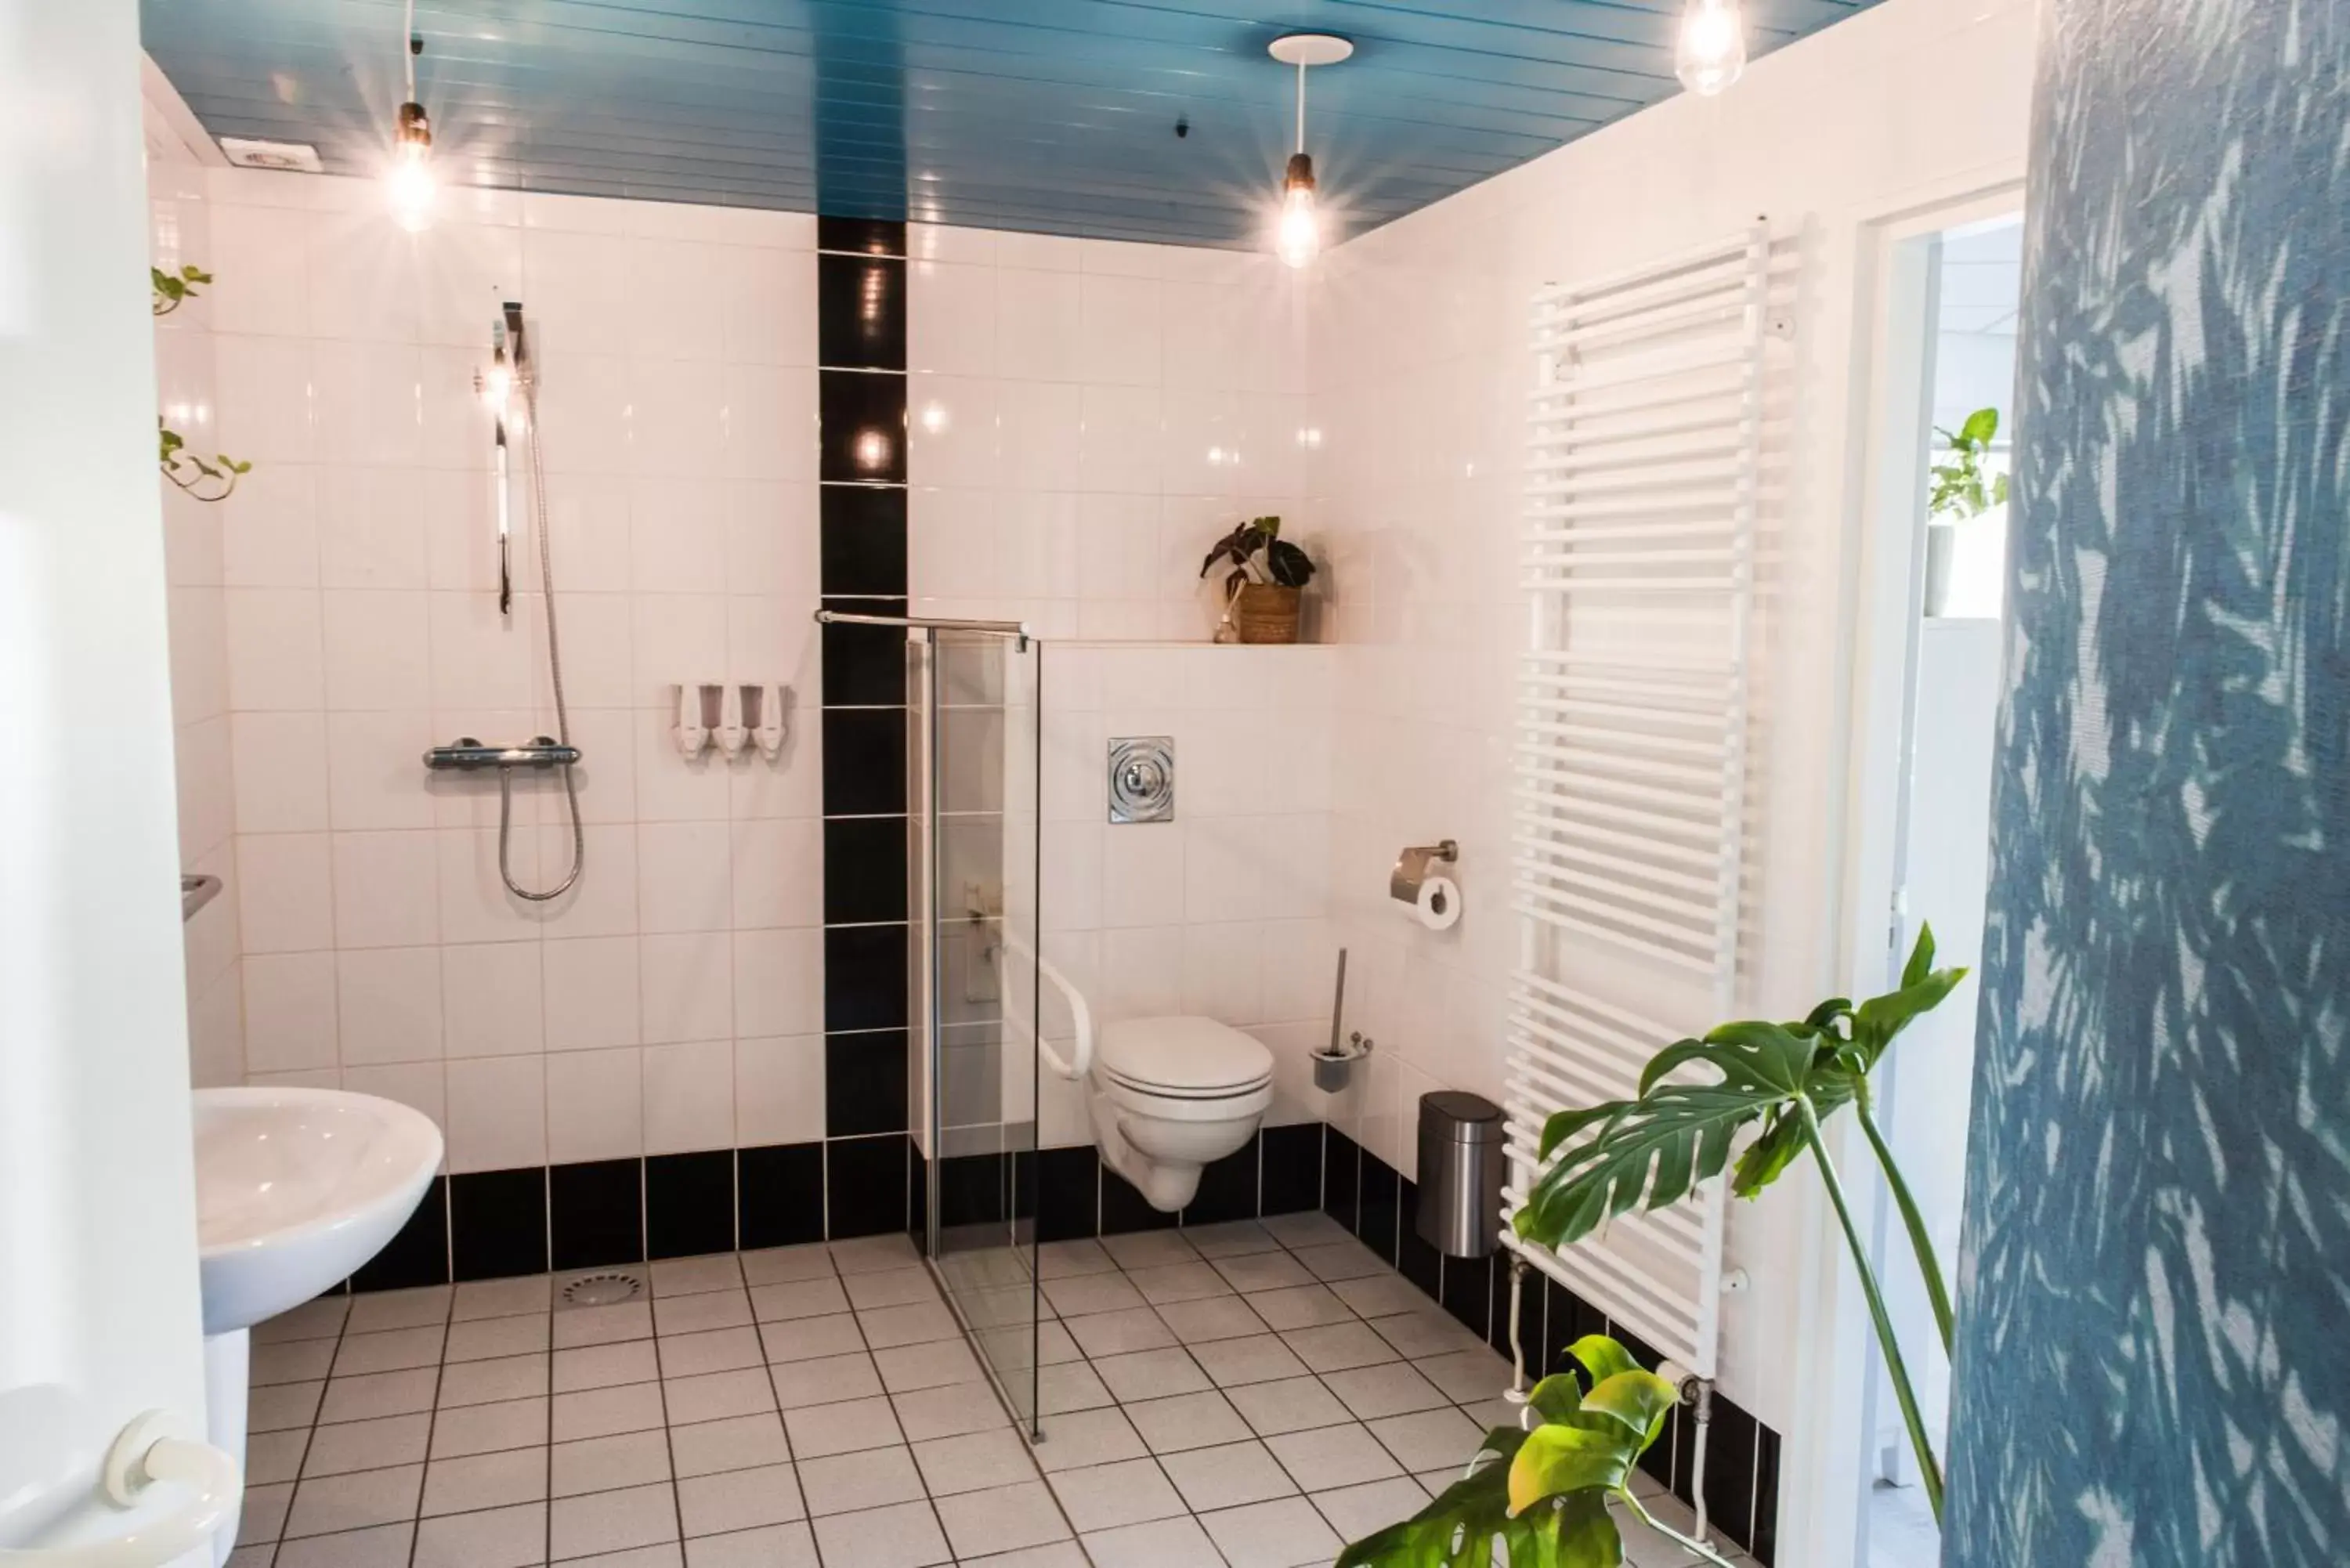 Shower, Bathroom in BnB It Hazzeleger Beetsterzwaag